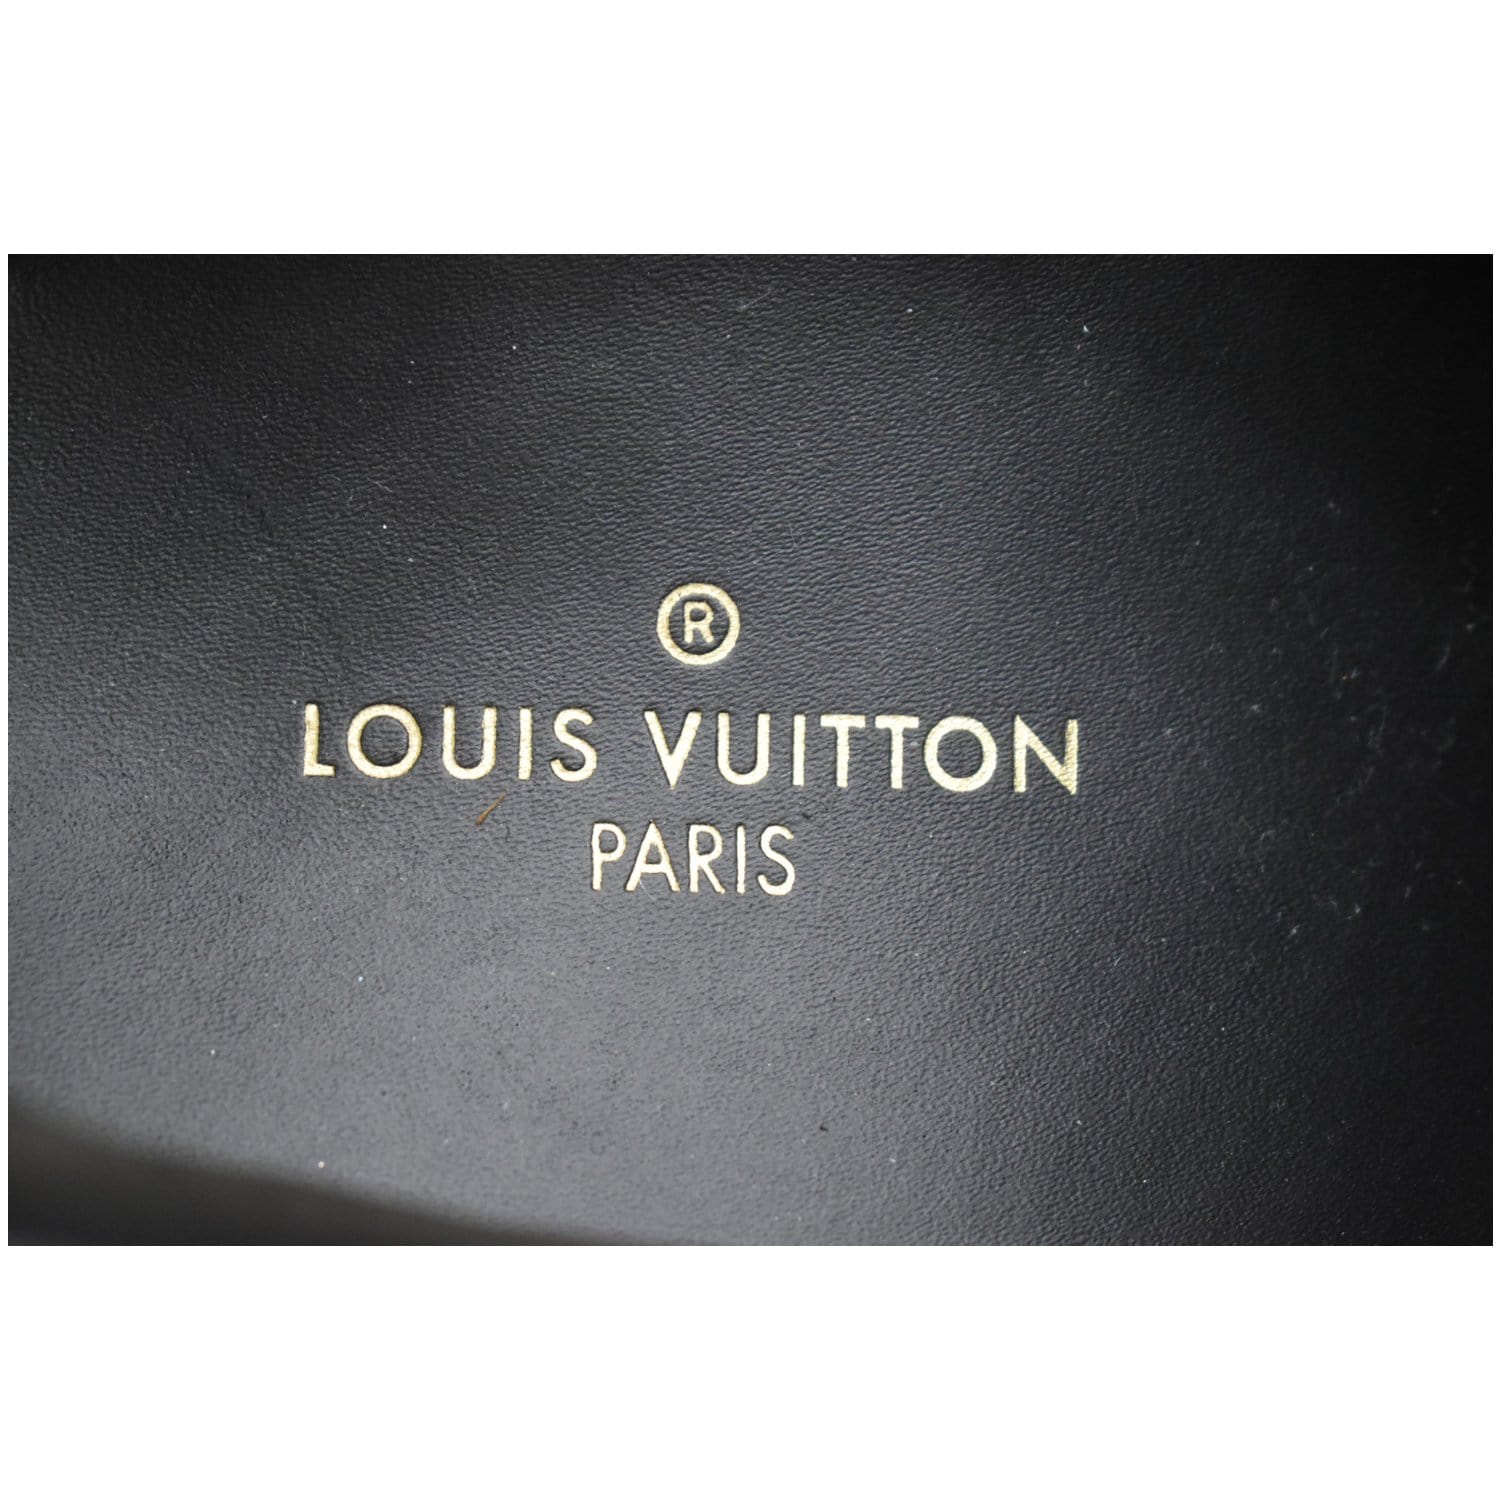 Run away trainers Louis Vuitton Blue size 38.5 EU in Suede - 20864257